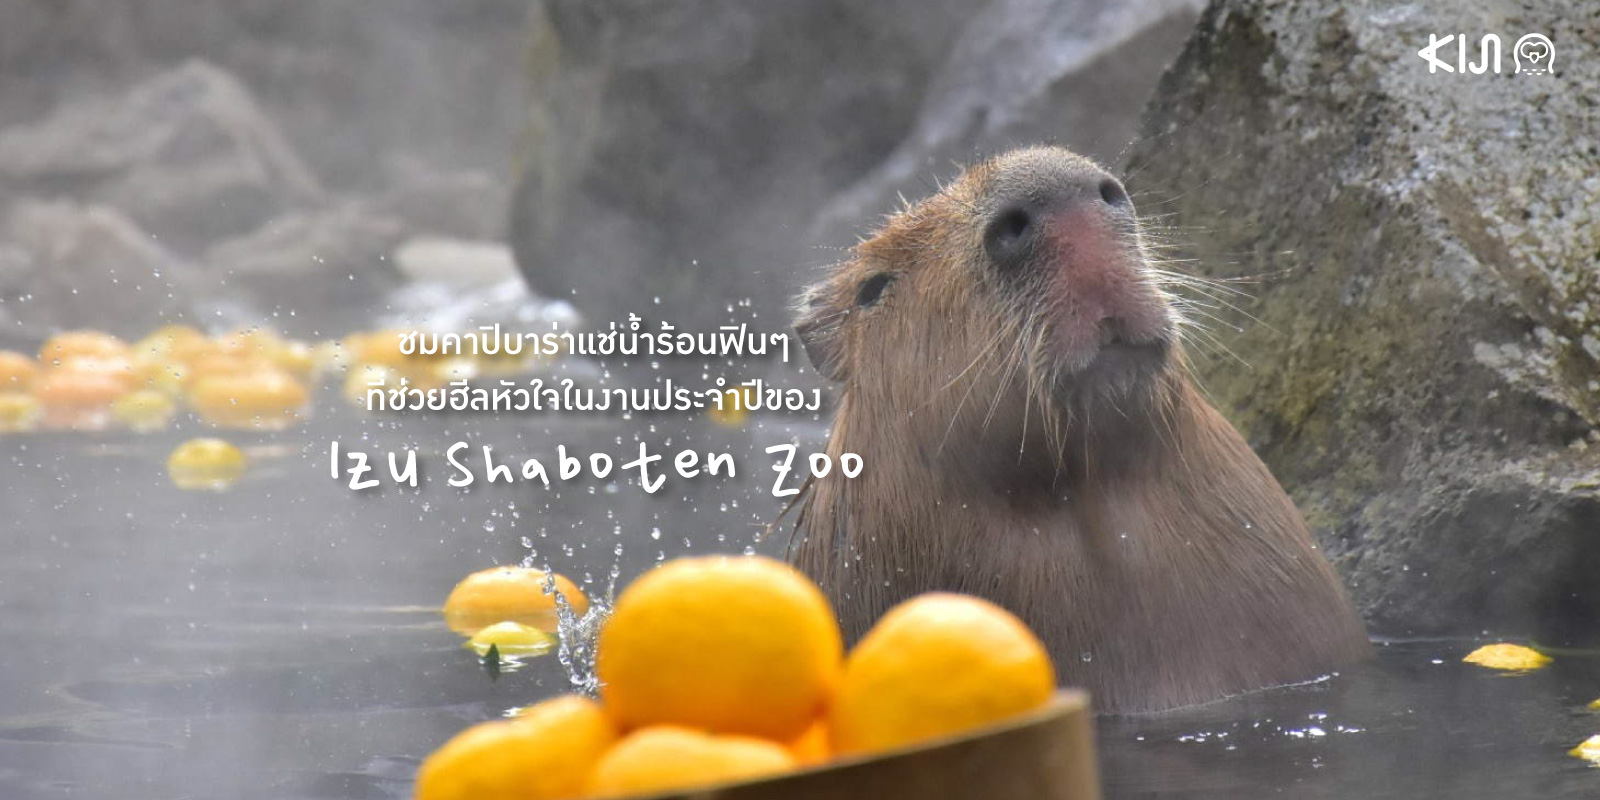 Ganso Capybara no Rotenburo งานชื่นชมเจ้าคาปิบาร่าแช่น้ำร้อนในช่วงฤดูหนาวของสวนสัตว์อิซุ ชาโบเท็น